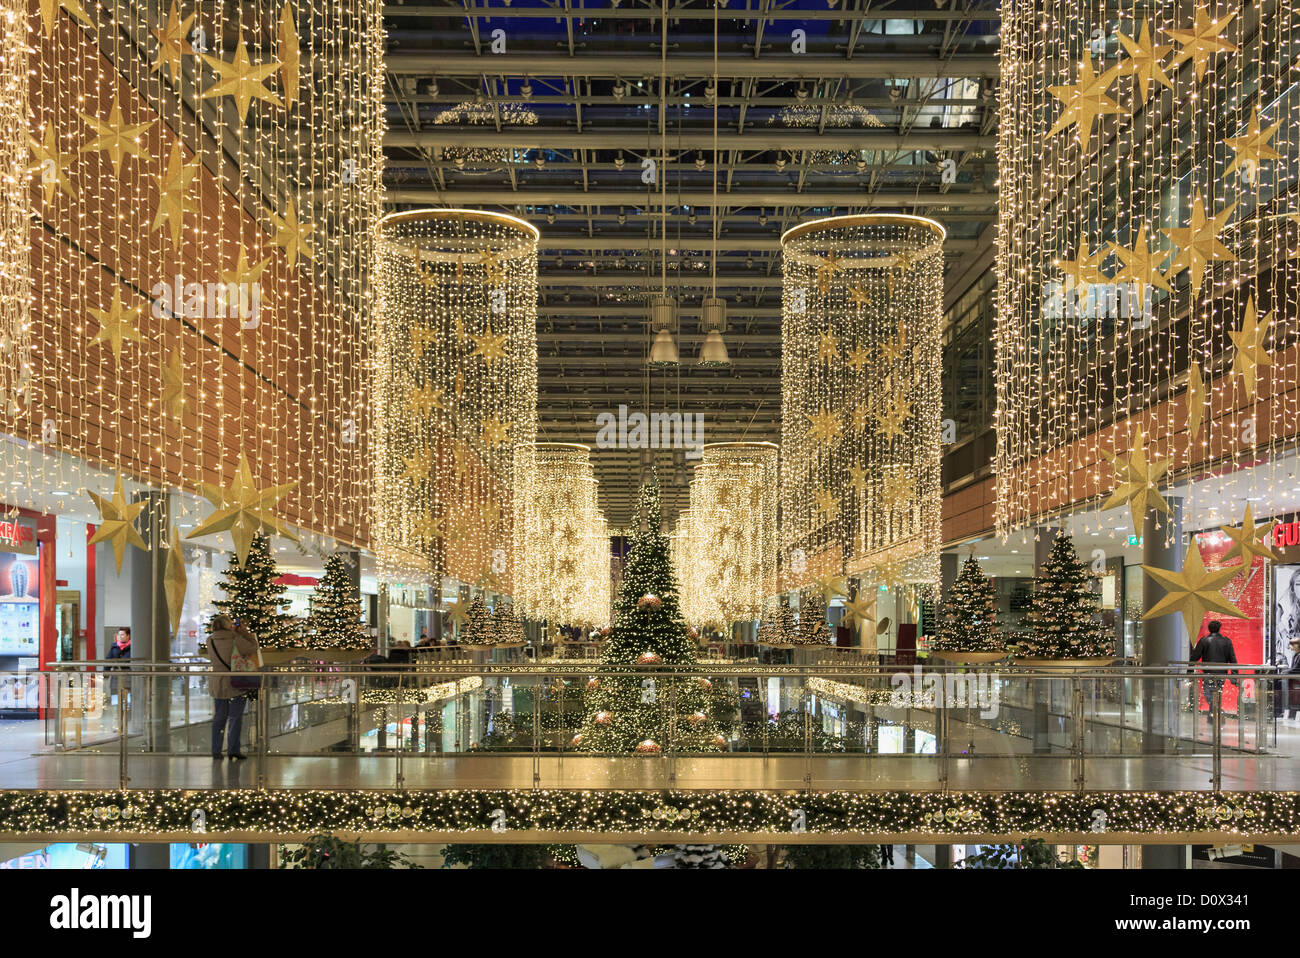 Weihnachtsbeleuchtung und Dekorationen im neuen Einkaufszentrum Arkaden am Potsdamer Platz, Berlin City, Deutschland, Europa. Stockfoto